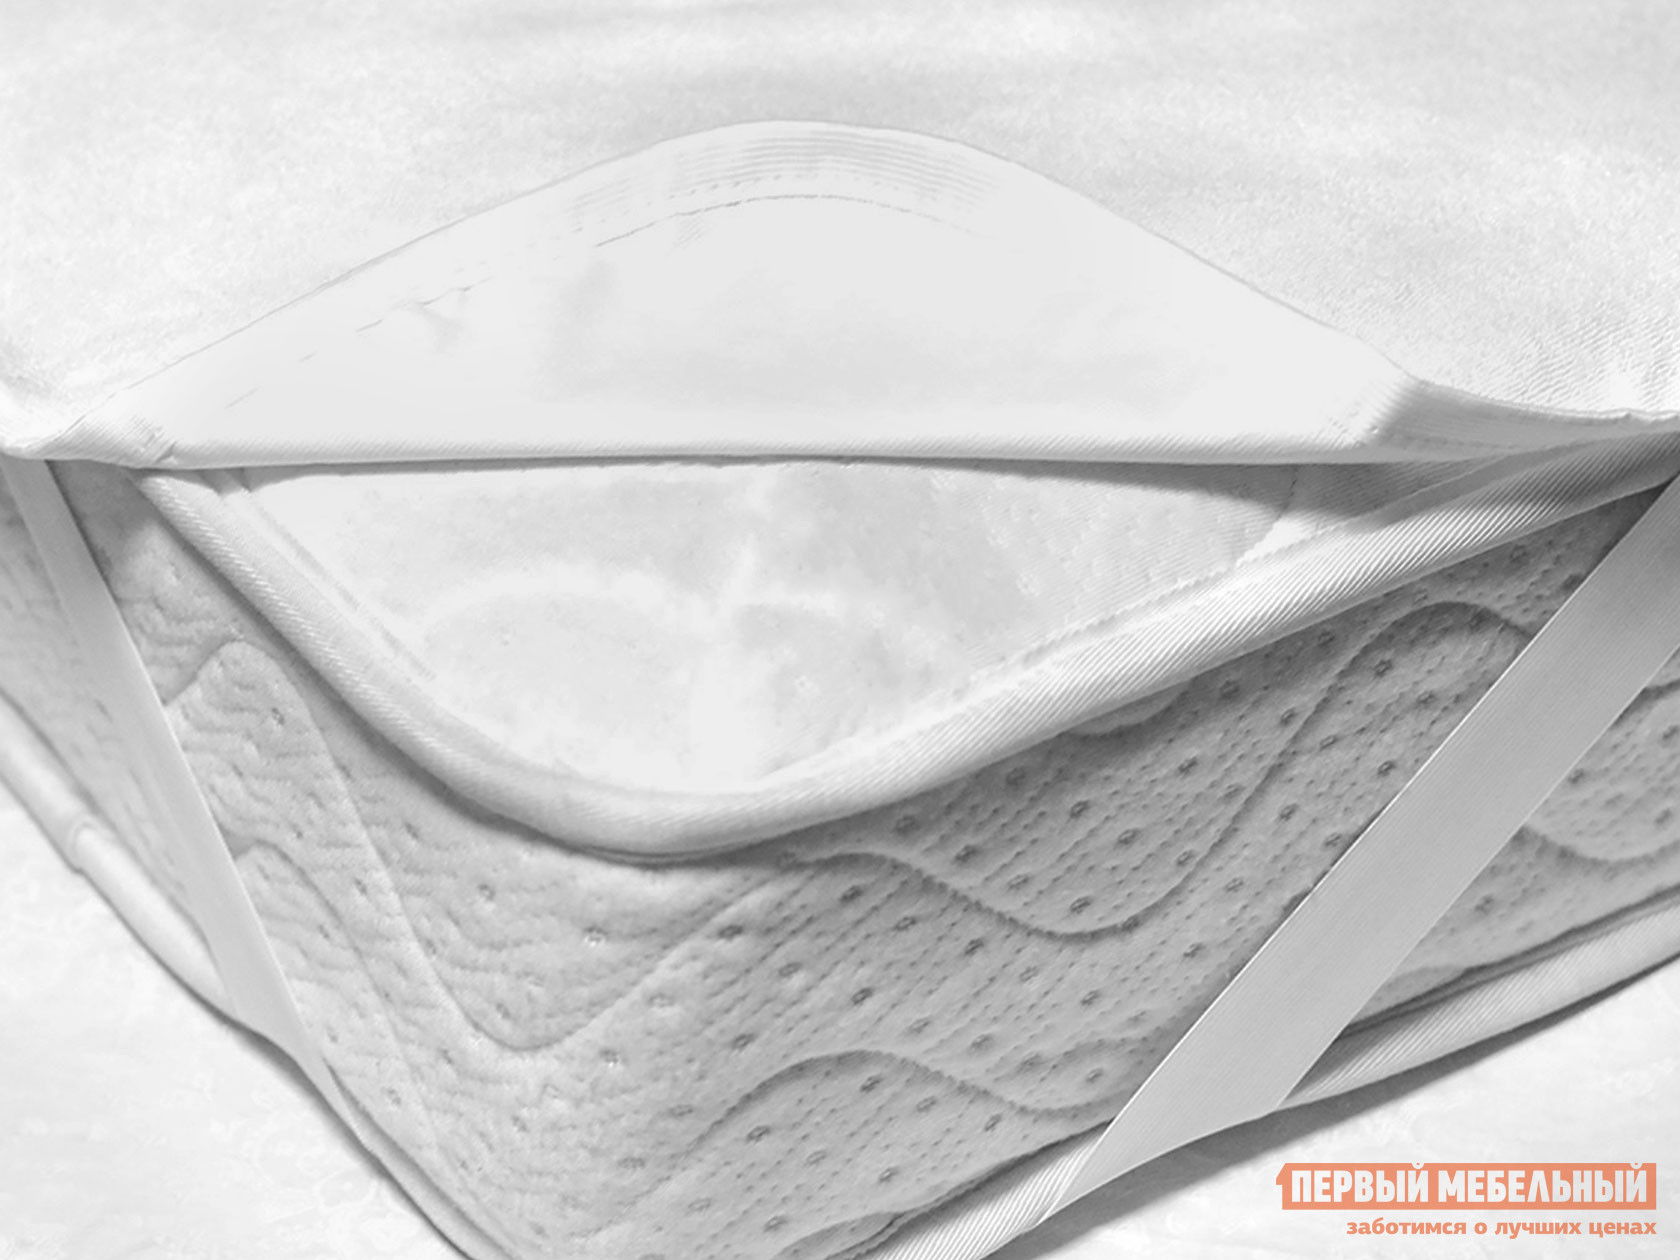 Чехол для матраса  Фулл протекшн на резинке Белый махровый, 1400 Х 2000 мм от Первый Мебельный